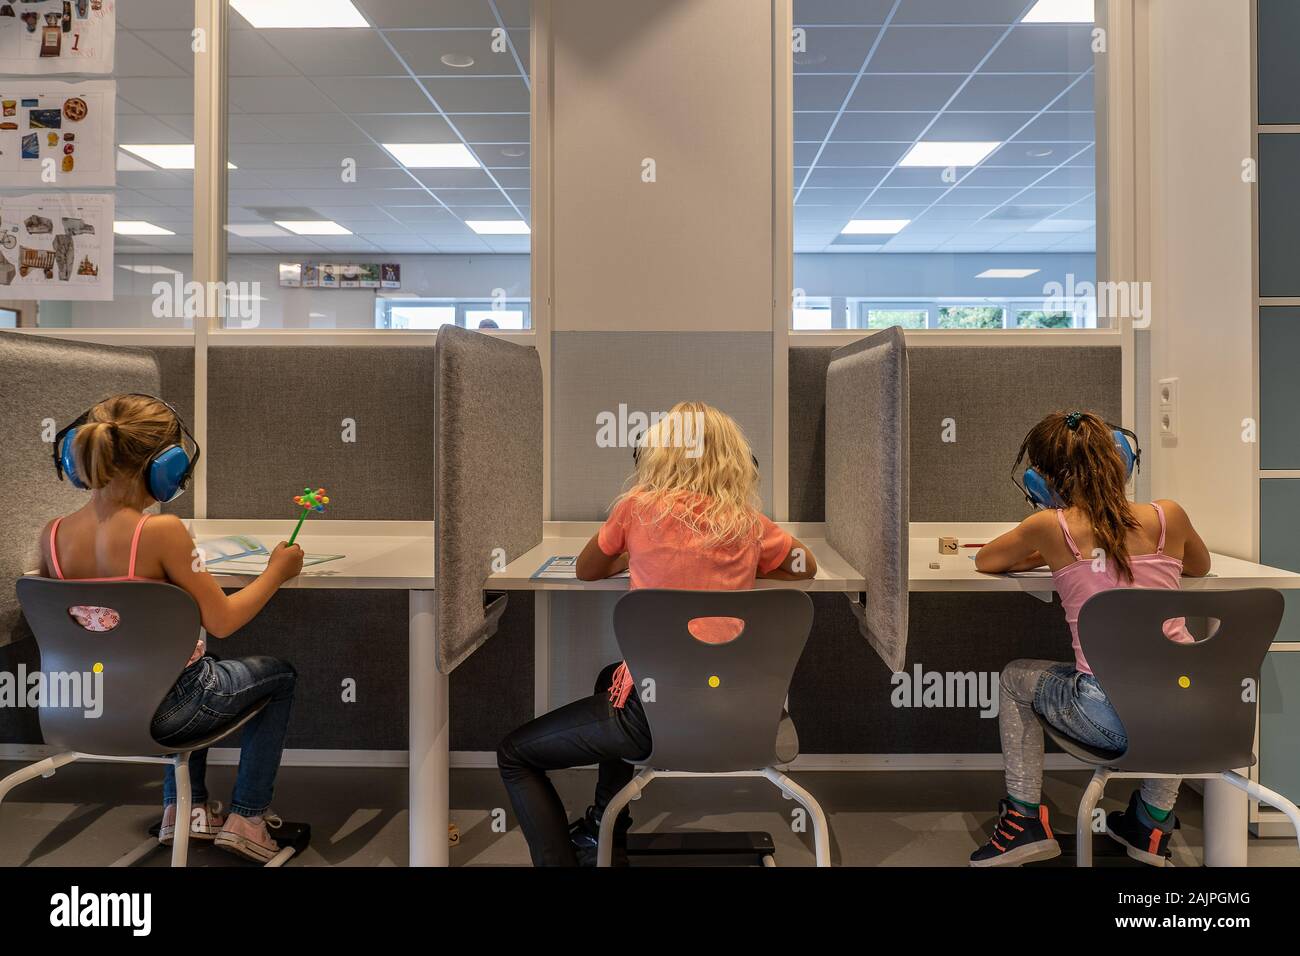 NIJMEGEN/Niederlande - September 13, 2019: Kinder in einer modernen Schule Umwelt konzentriertes Arbeiten. Sind Sie allein arbeiten ohne Lehrer Stockfoto